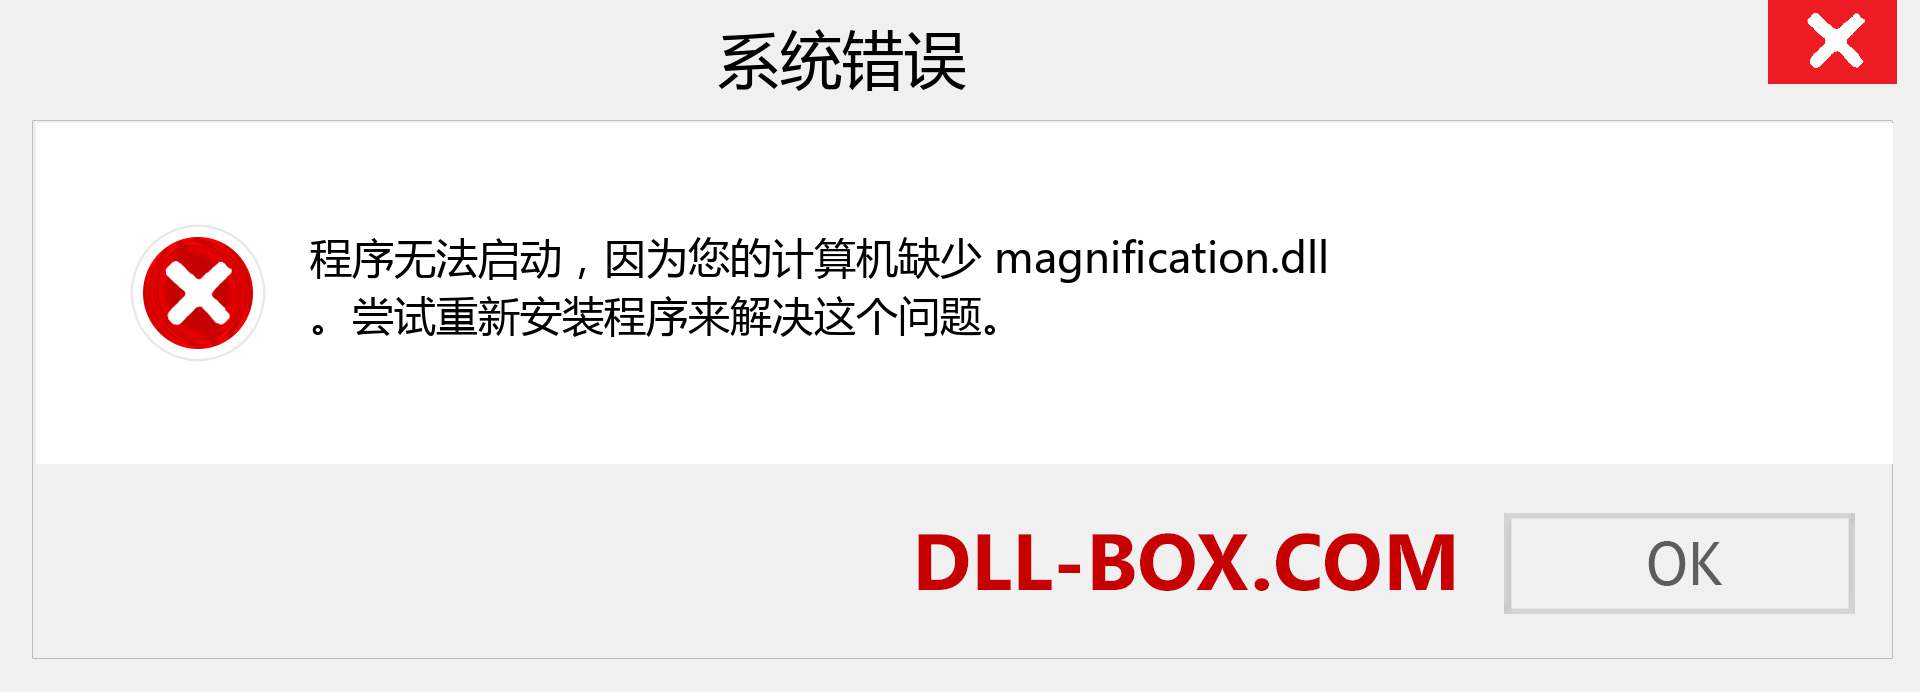 magnification.dll 文件丢失？。 适用于 Windows 7、8、10 的下载 - 修复 Windows、照片、图像上的 magnification dll 丢失错误